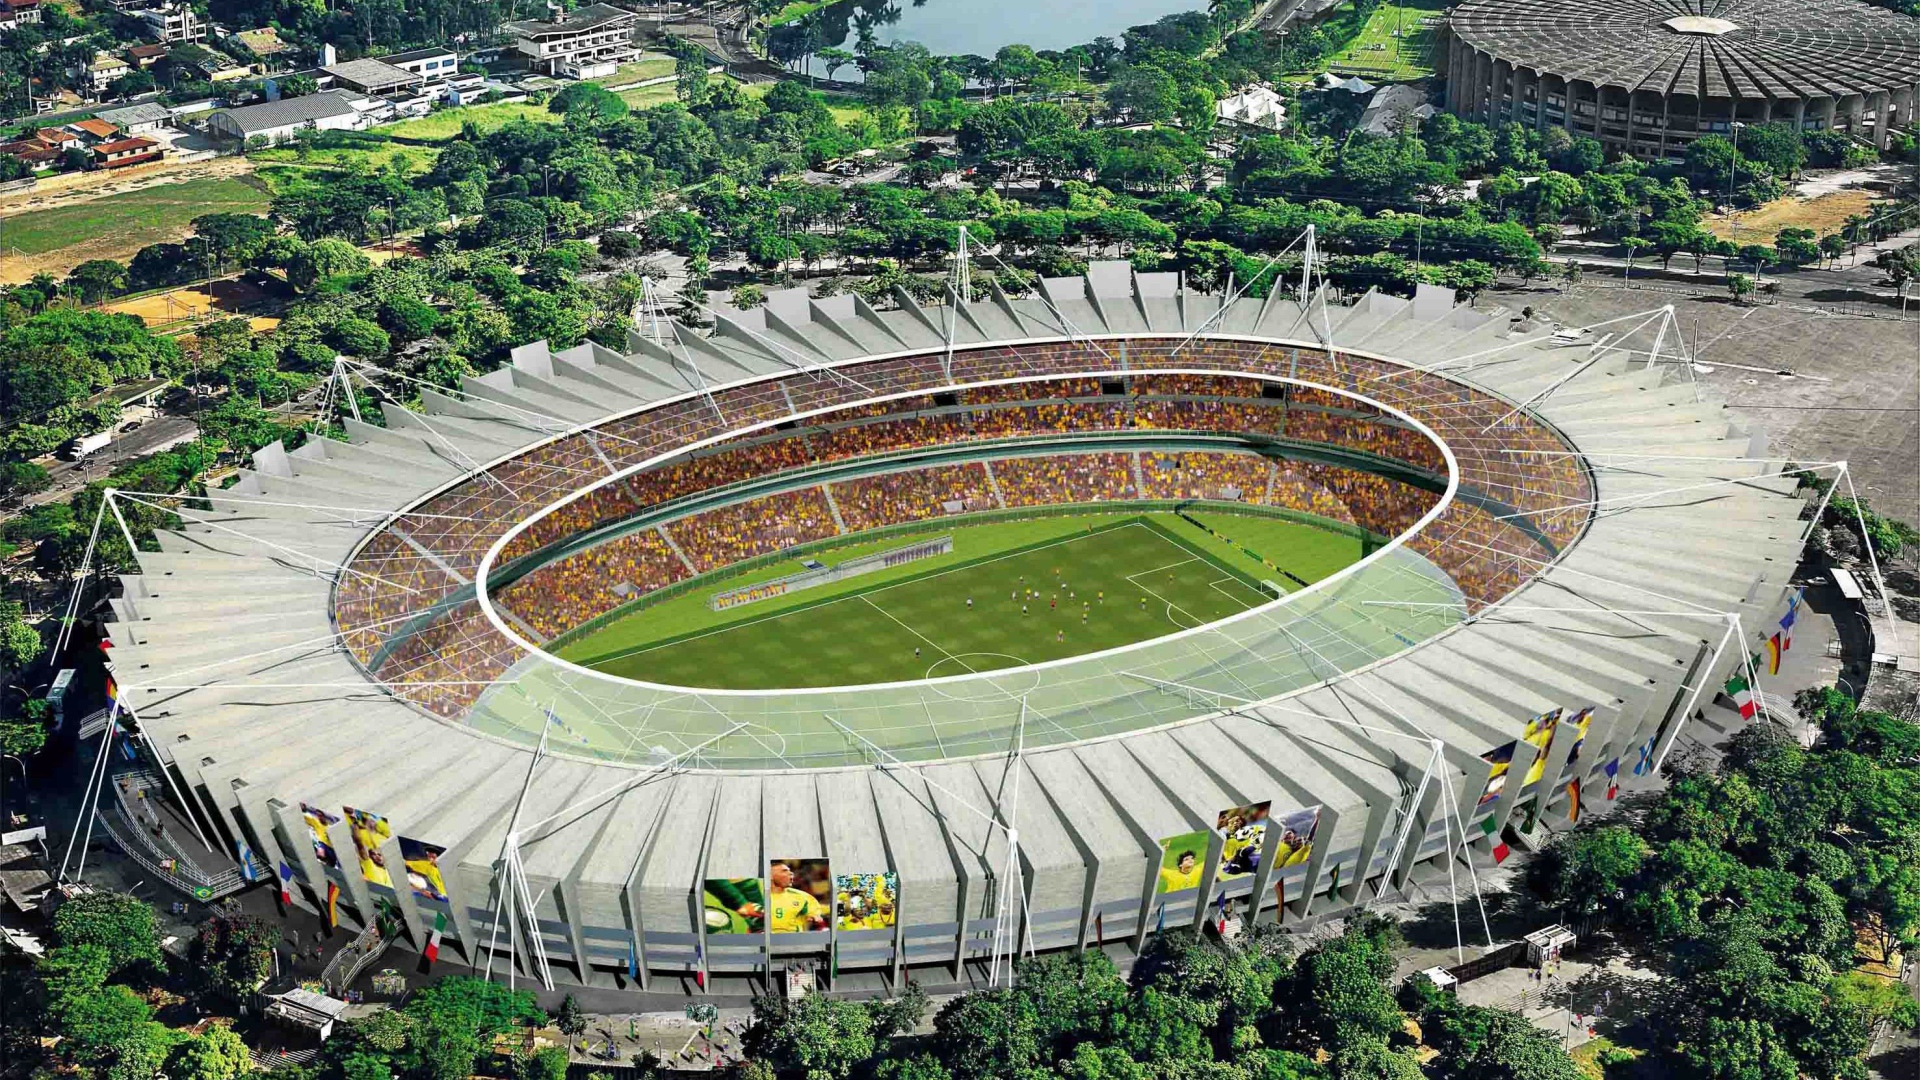 Красивый стадион на Чемпионате мира по футболу в Бразилии 2014